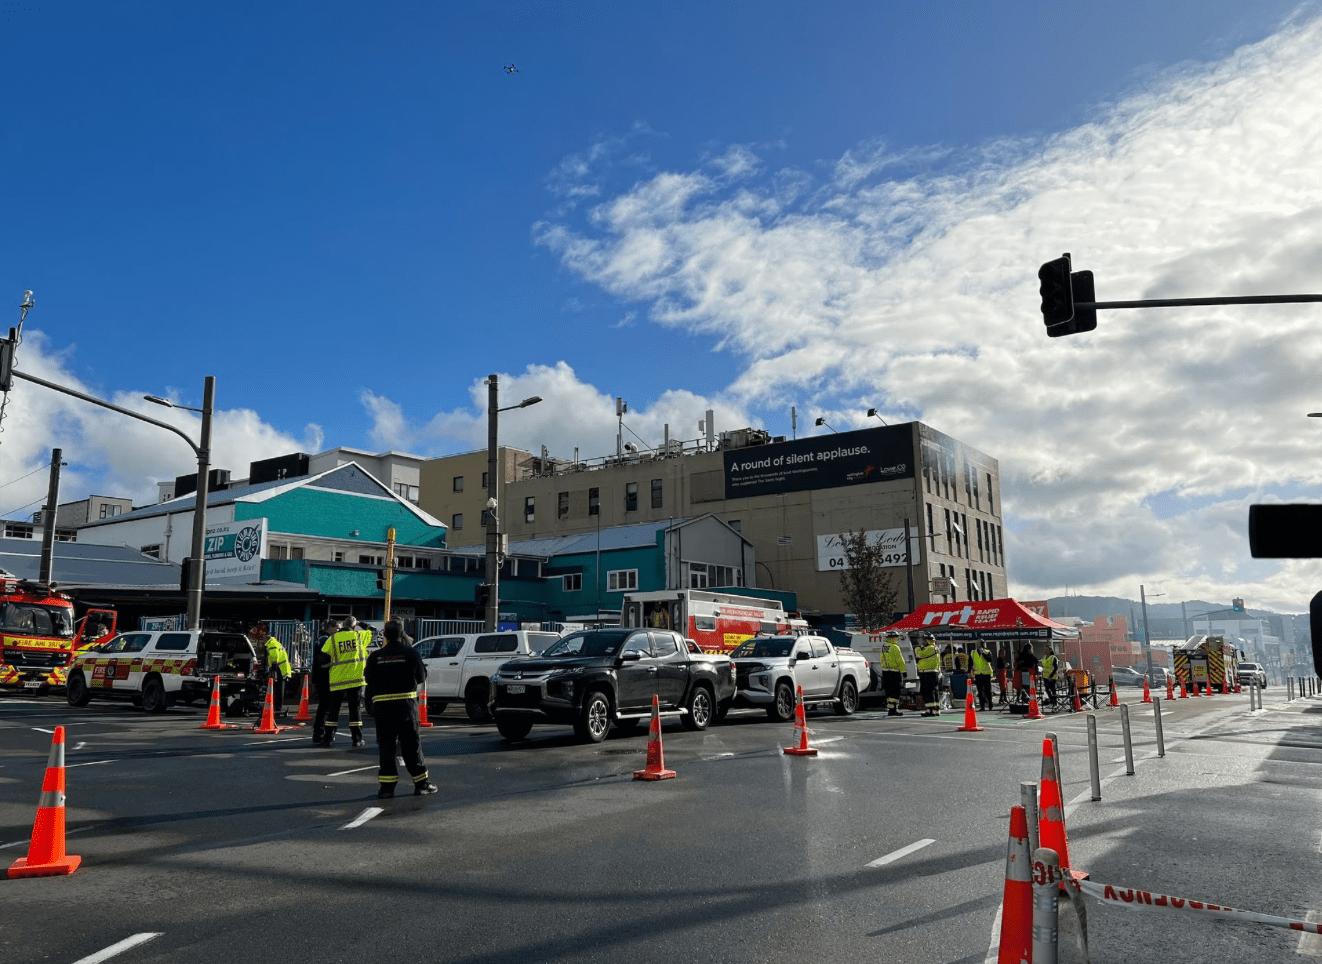 6 dead in New Zealand hostel fire